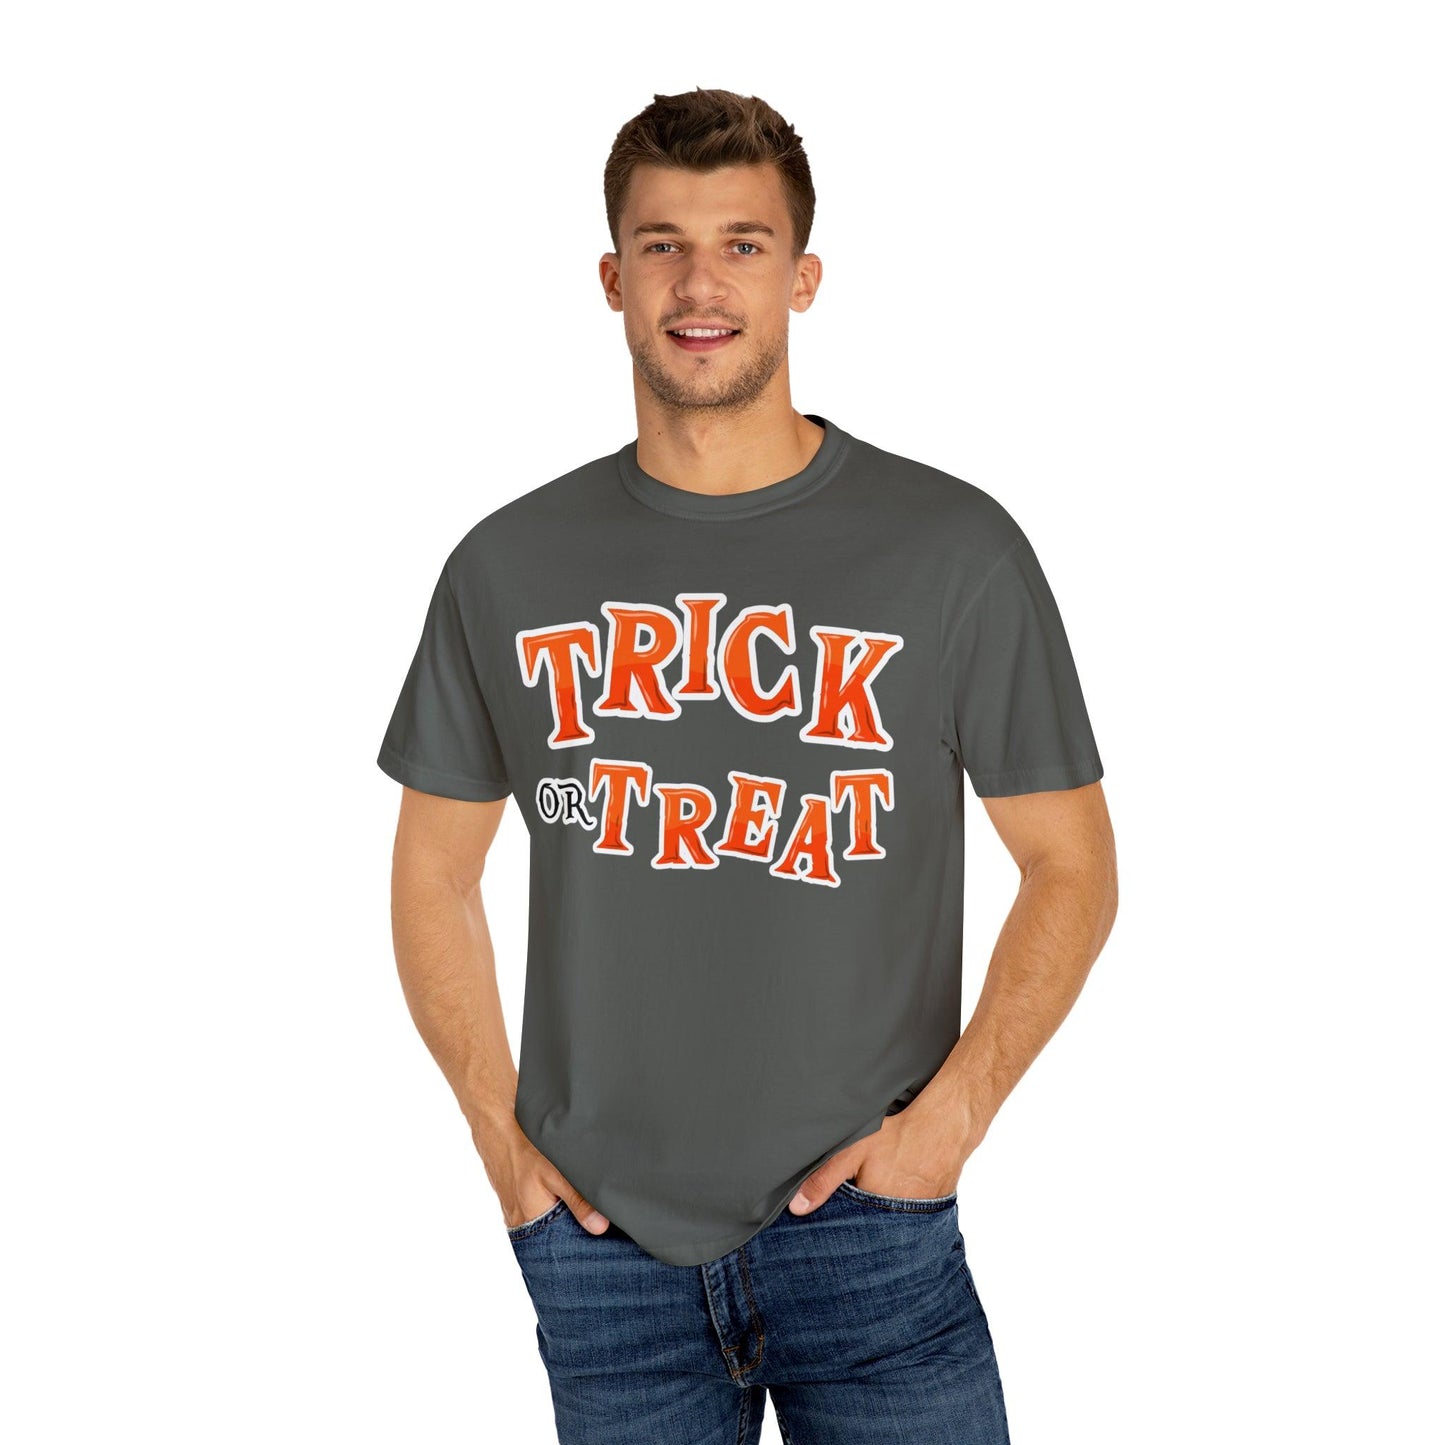 Retro Halloween Tshirt, Trick or Treat Shirt Vintage Shirt Halloween Shirt Cute Spooky Shirt, Halloween Gift Halloween T-shirt